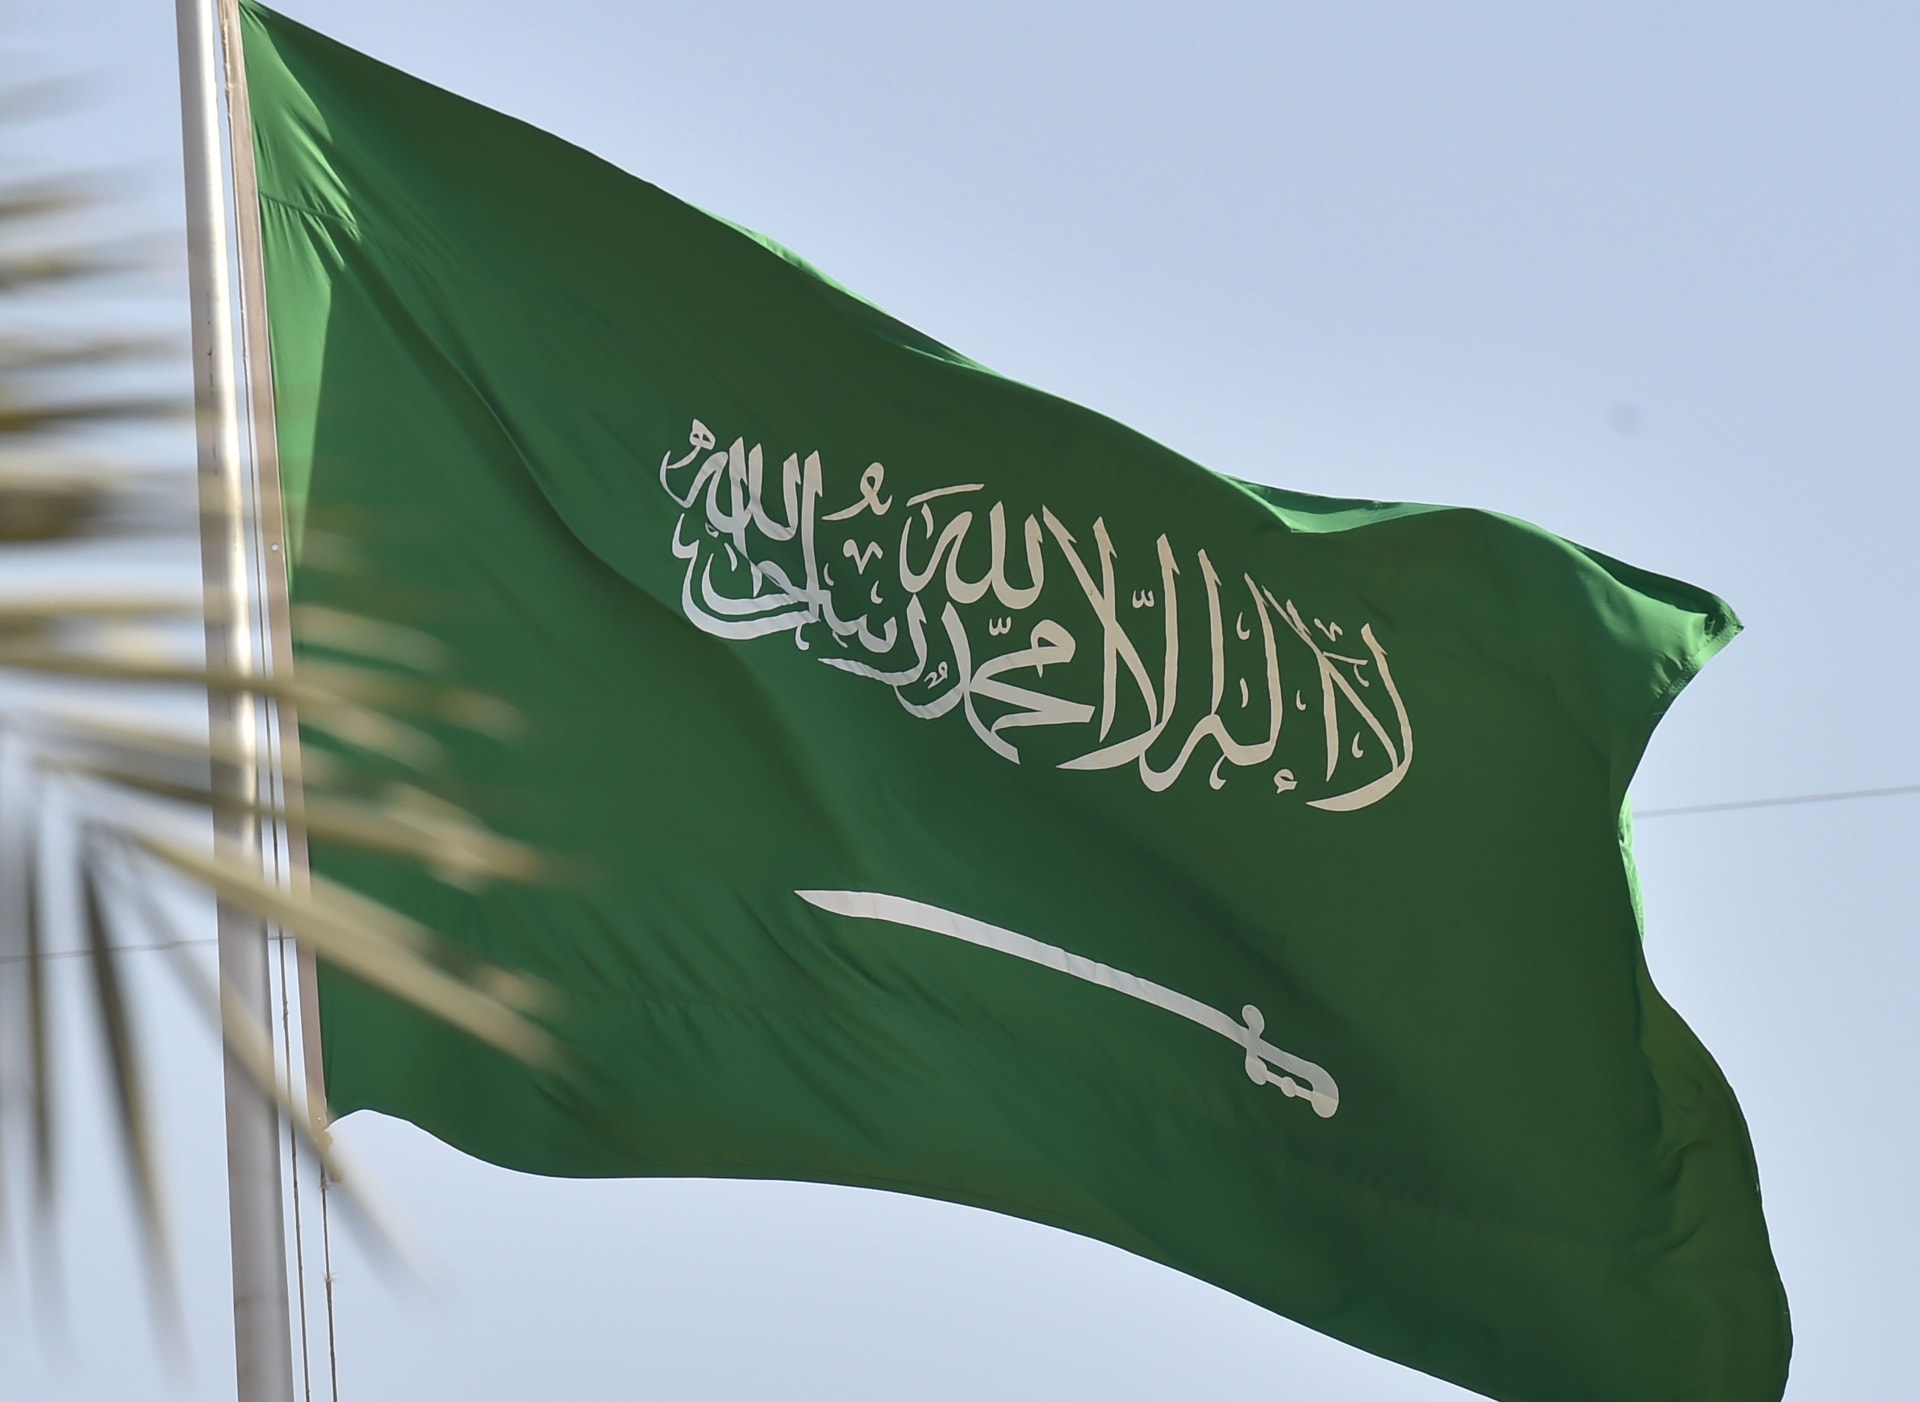 "الداخلية السعودية": إعدام سعوديين ارتكبا جريمتين بحق أسرتيهما .. تفاصيل 